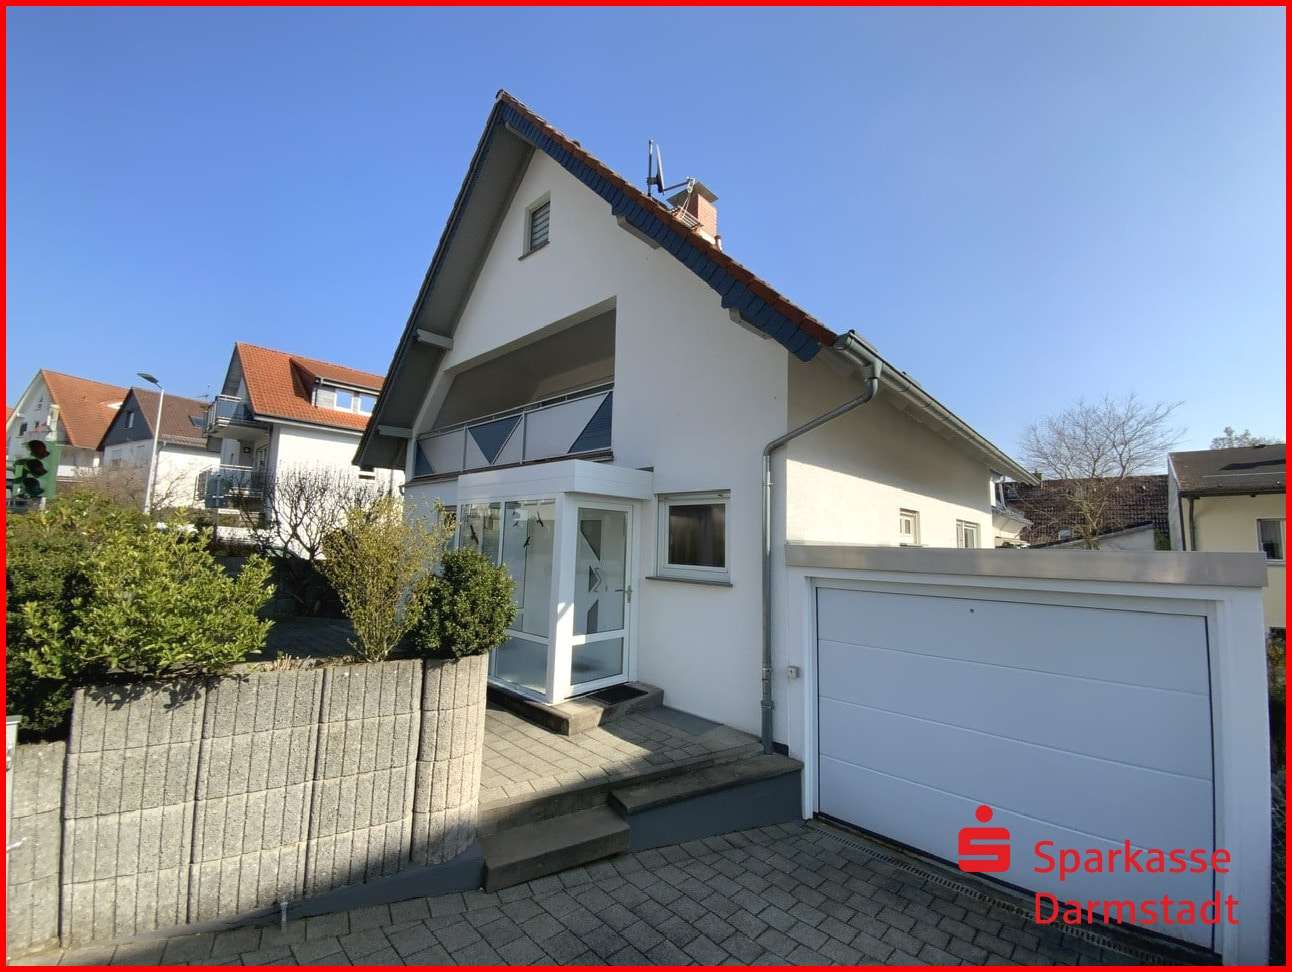 IMG_5765 - Einfamilienhaus in 64380 Roßdorf mit 124m² kaufen